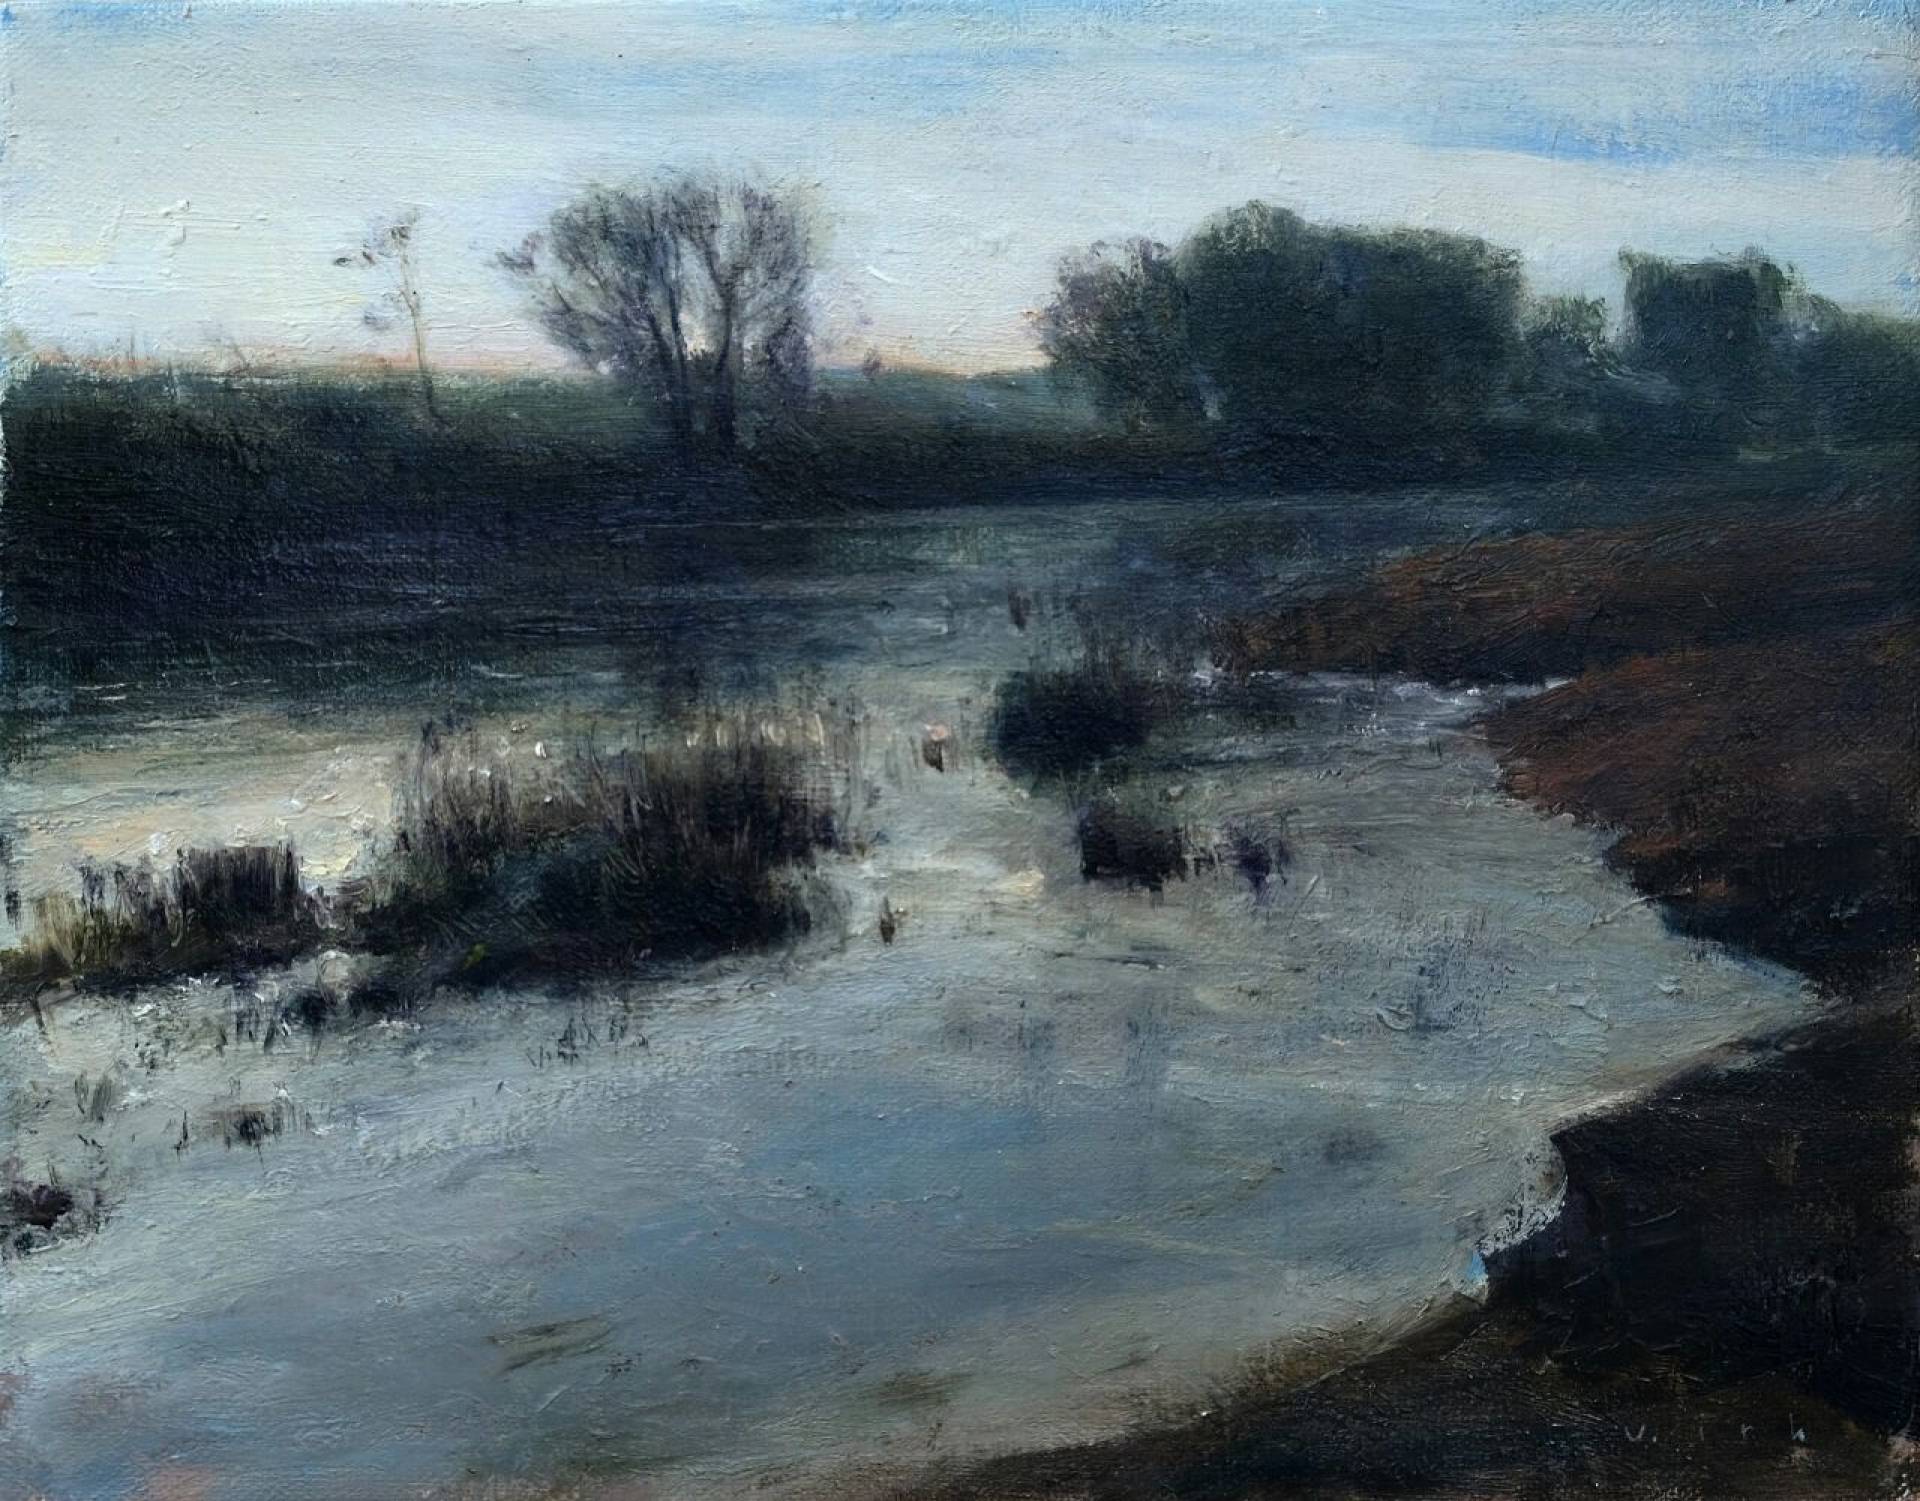 Shore, Vladimir Kirillov, Buy the painting Oil